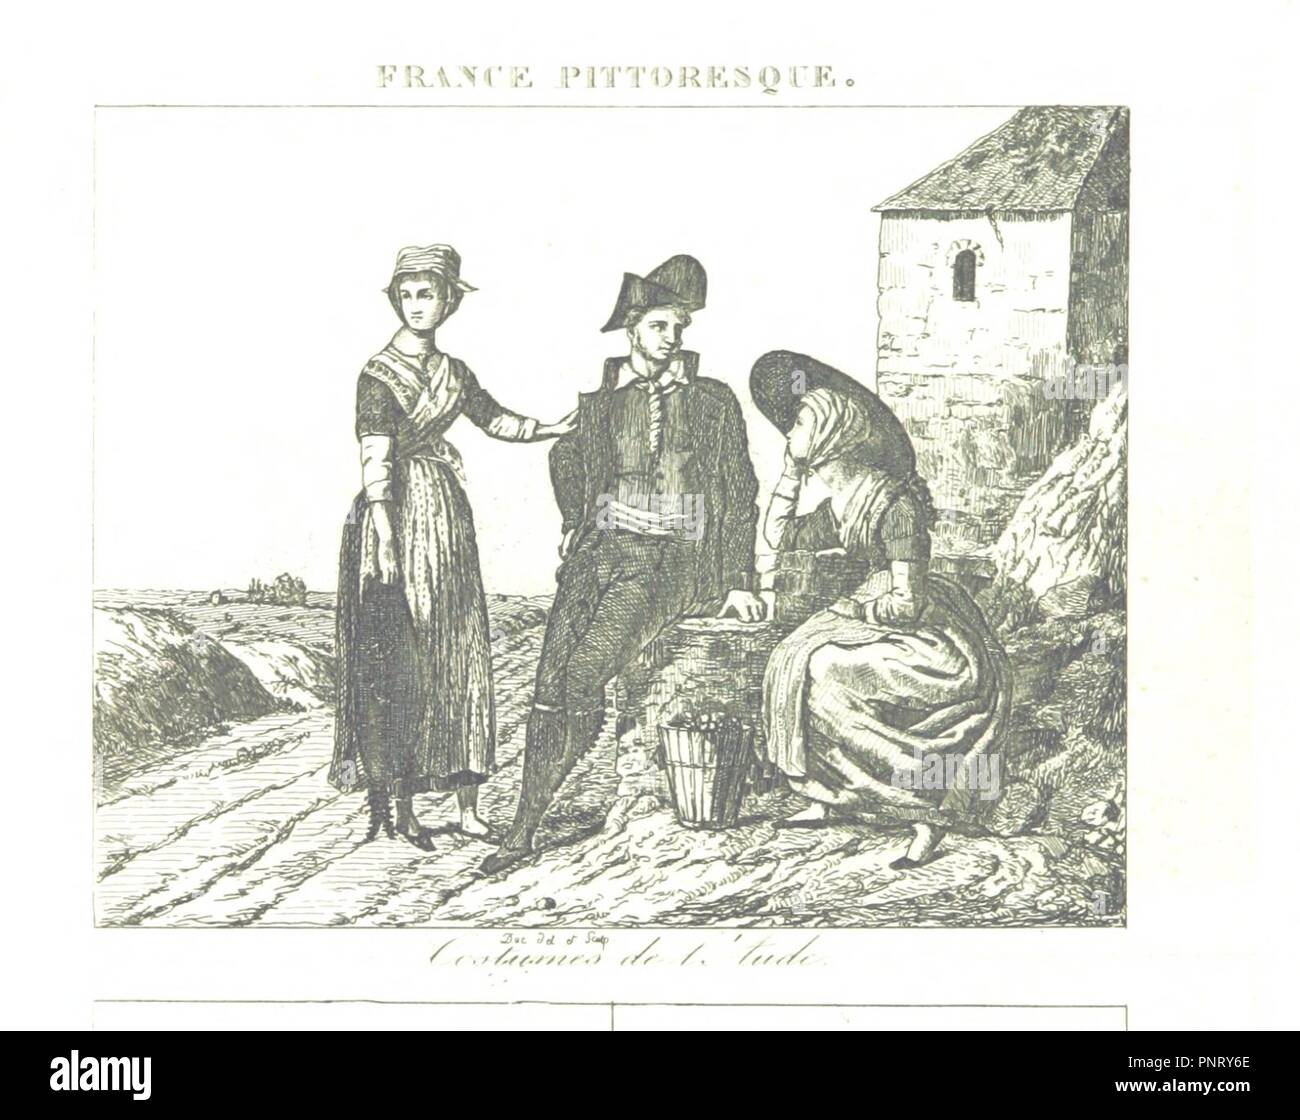 Bild von Seite 384 der "Frankreich pittoresque ou Beschreibung. des Départements et Kolonien de la France, usw. [mit Platten.]'. Stockfoto